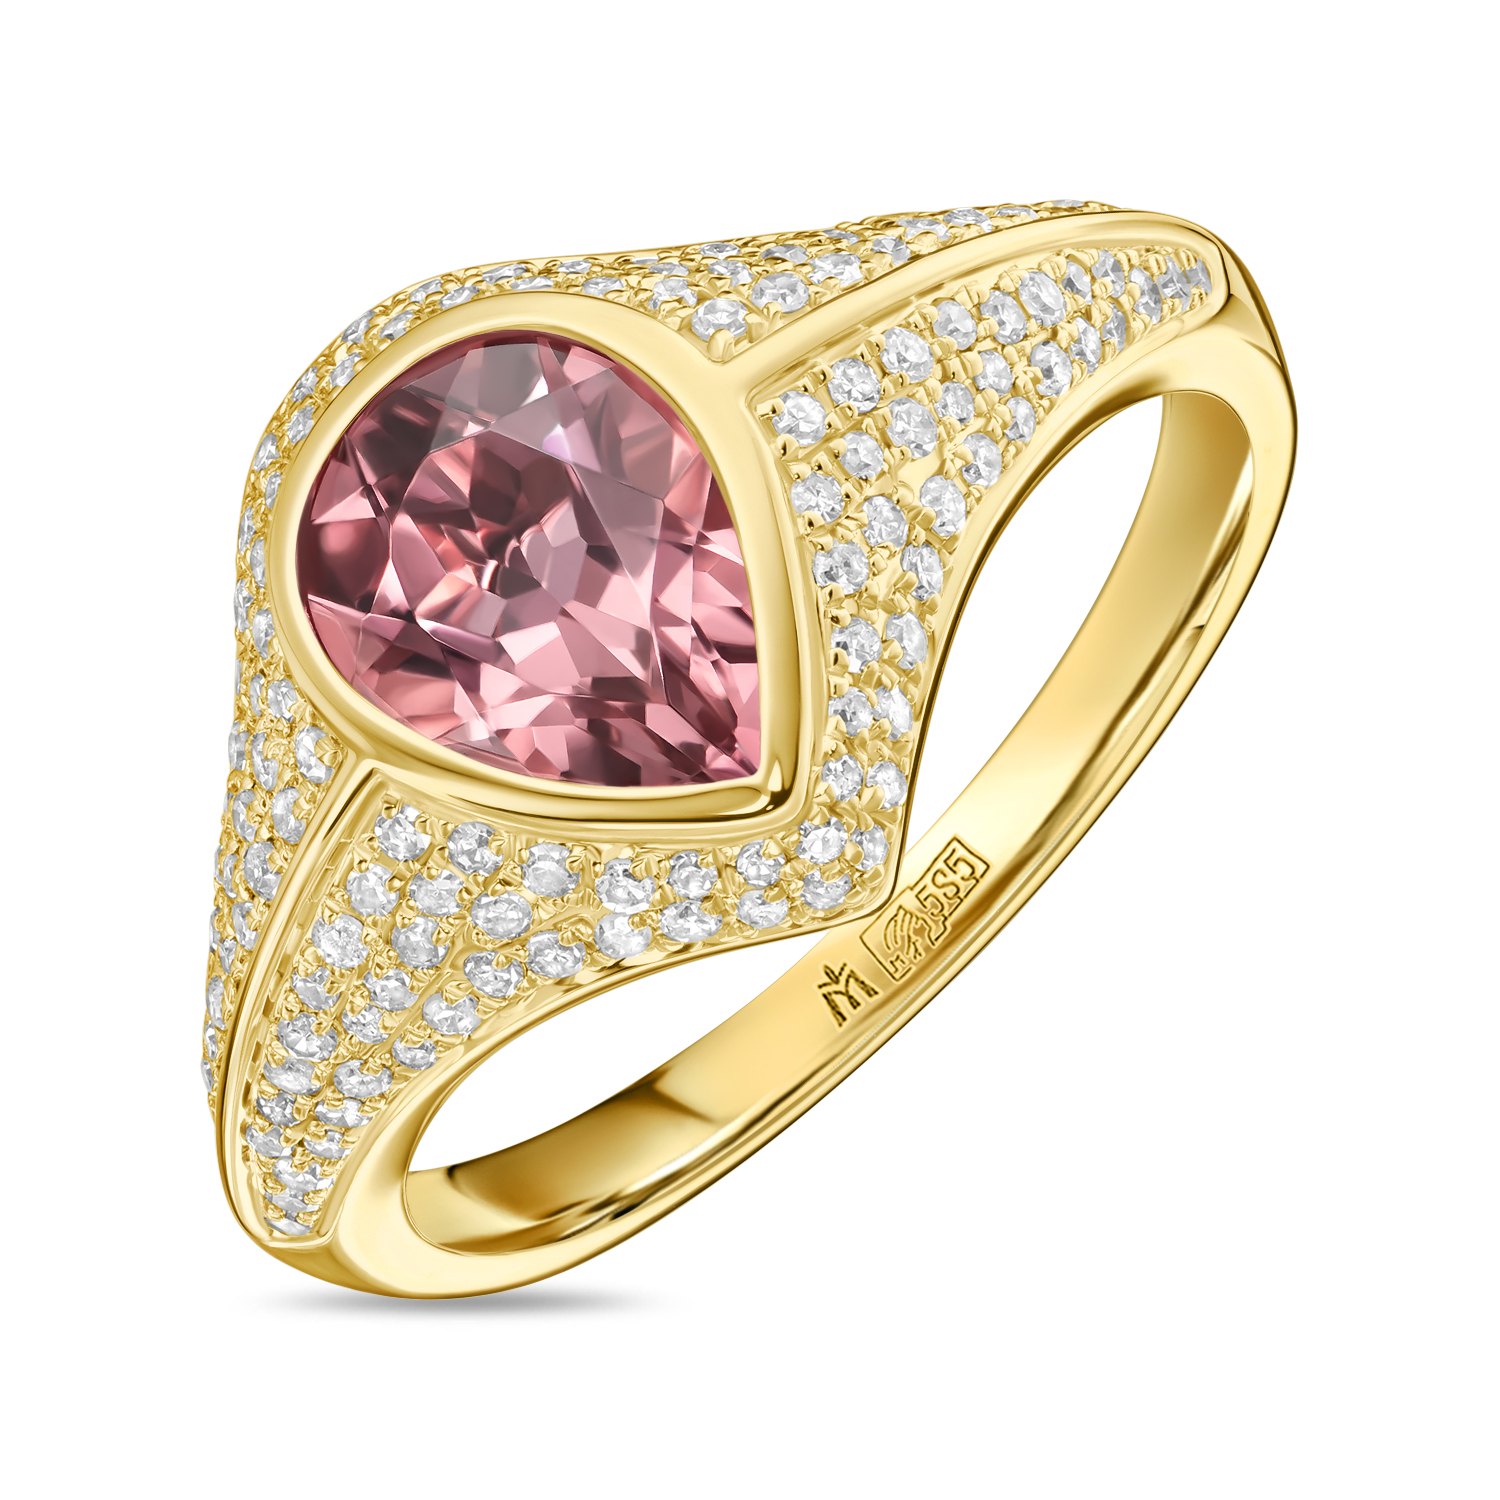 Кольца МЮЗ Кольцо с бриллиантами и турмалином кольца мюз золотое кольцо с бриллиантами и турмалином